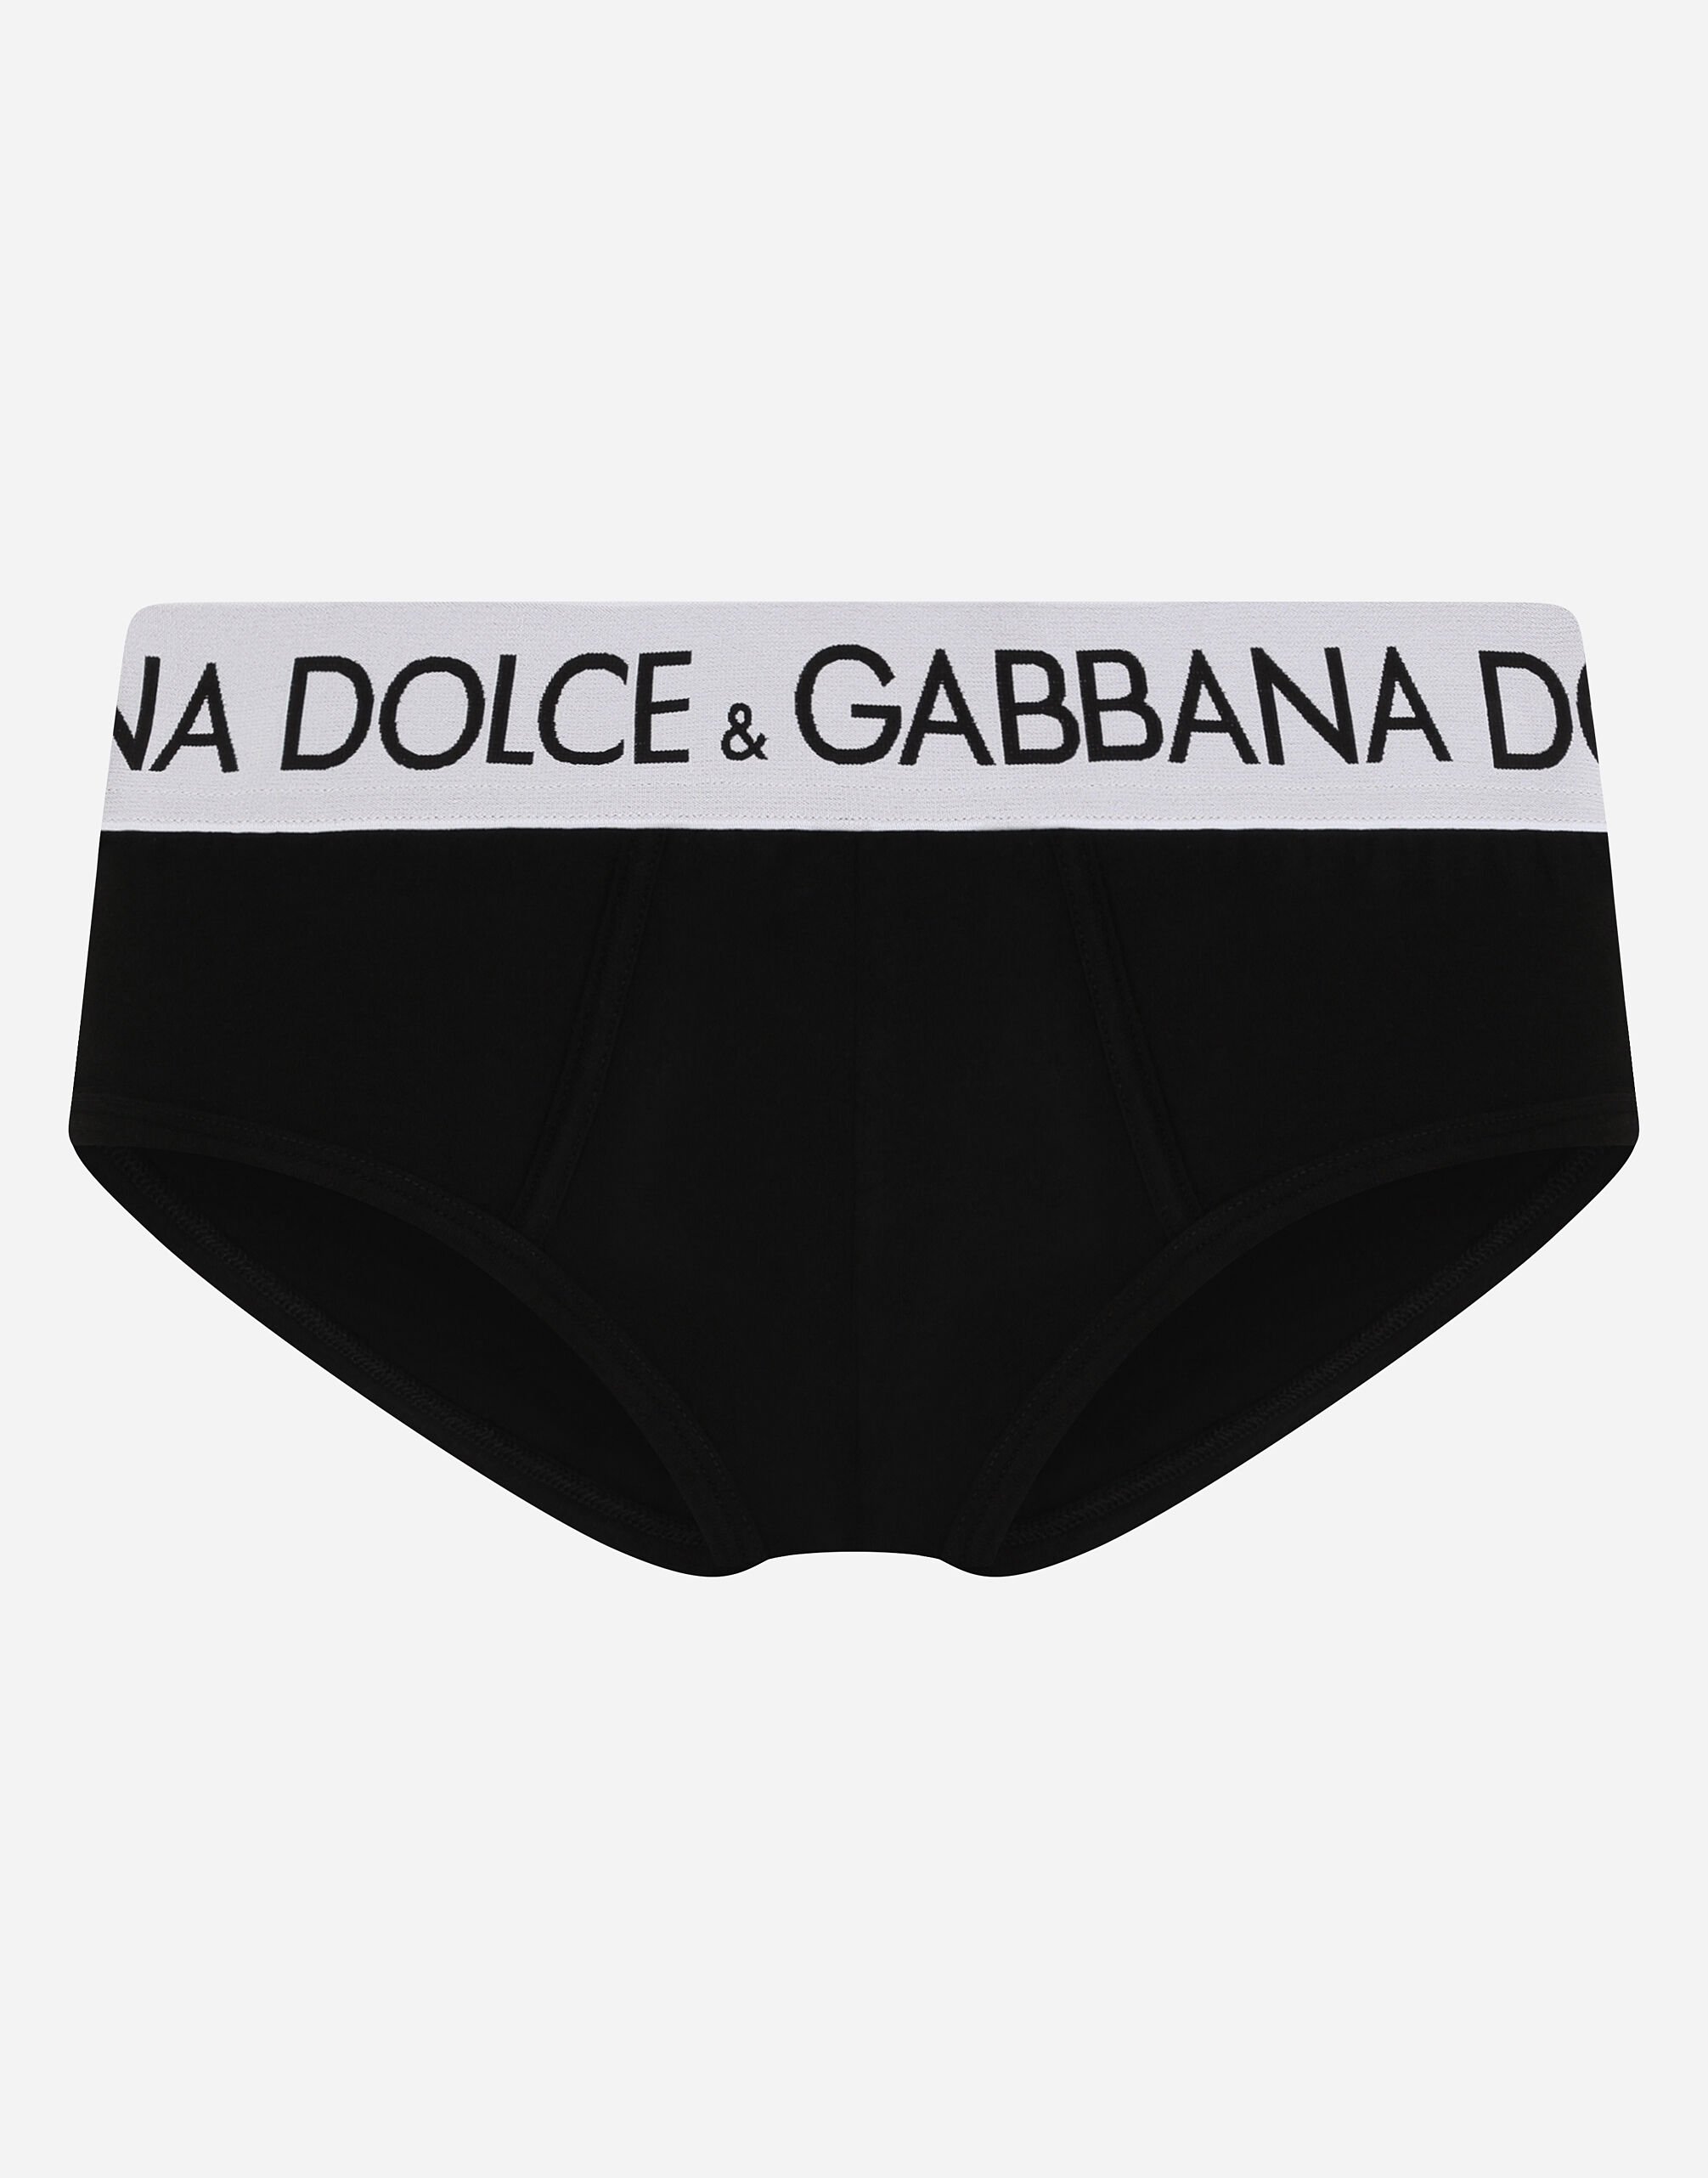 Dolce & Gabbana Brando two-way stretch jersey briefs Grey M3D03JONN97